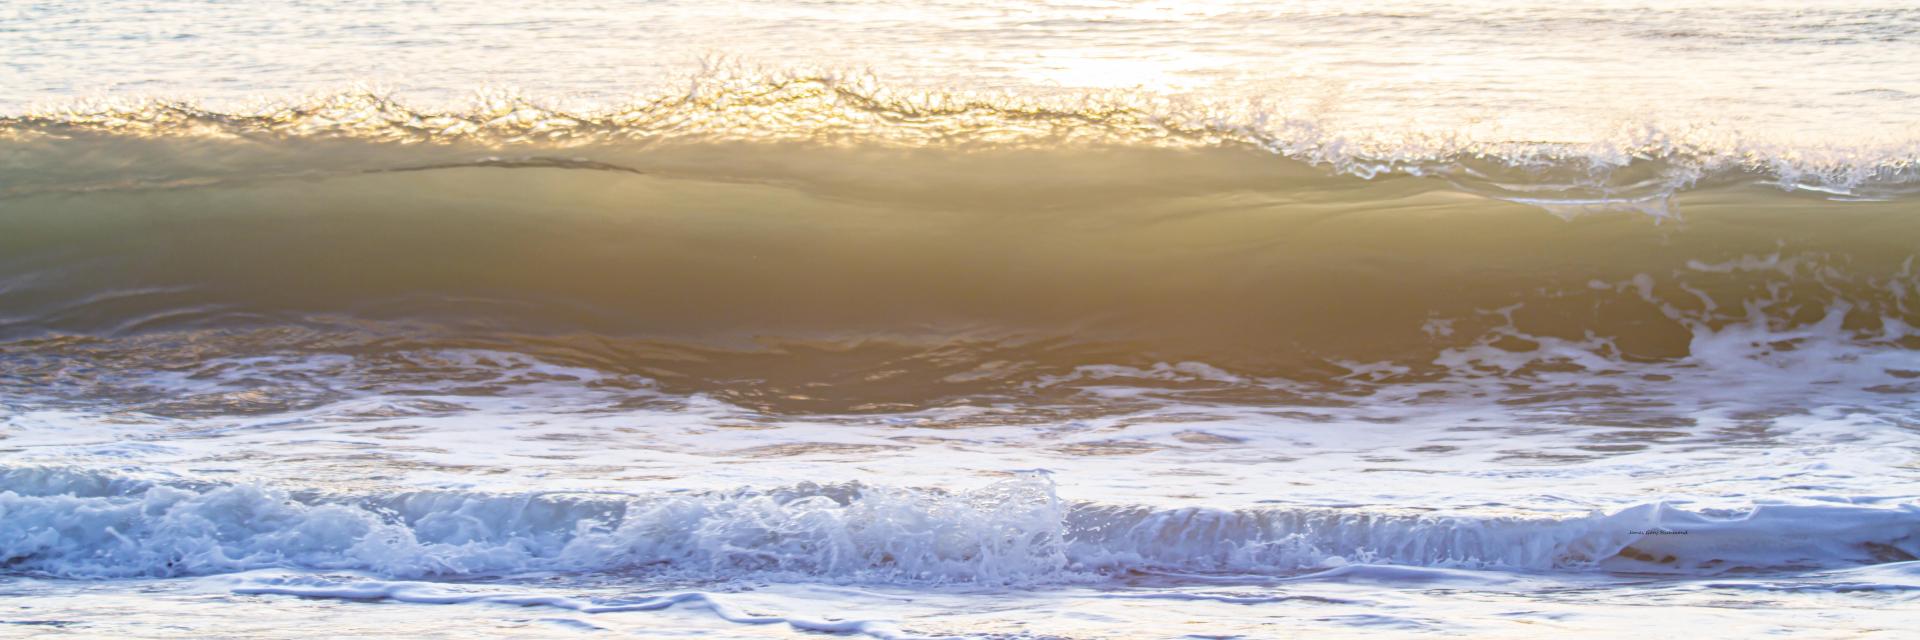 56885p  ocean surf breaking wave ,,  .jpg